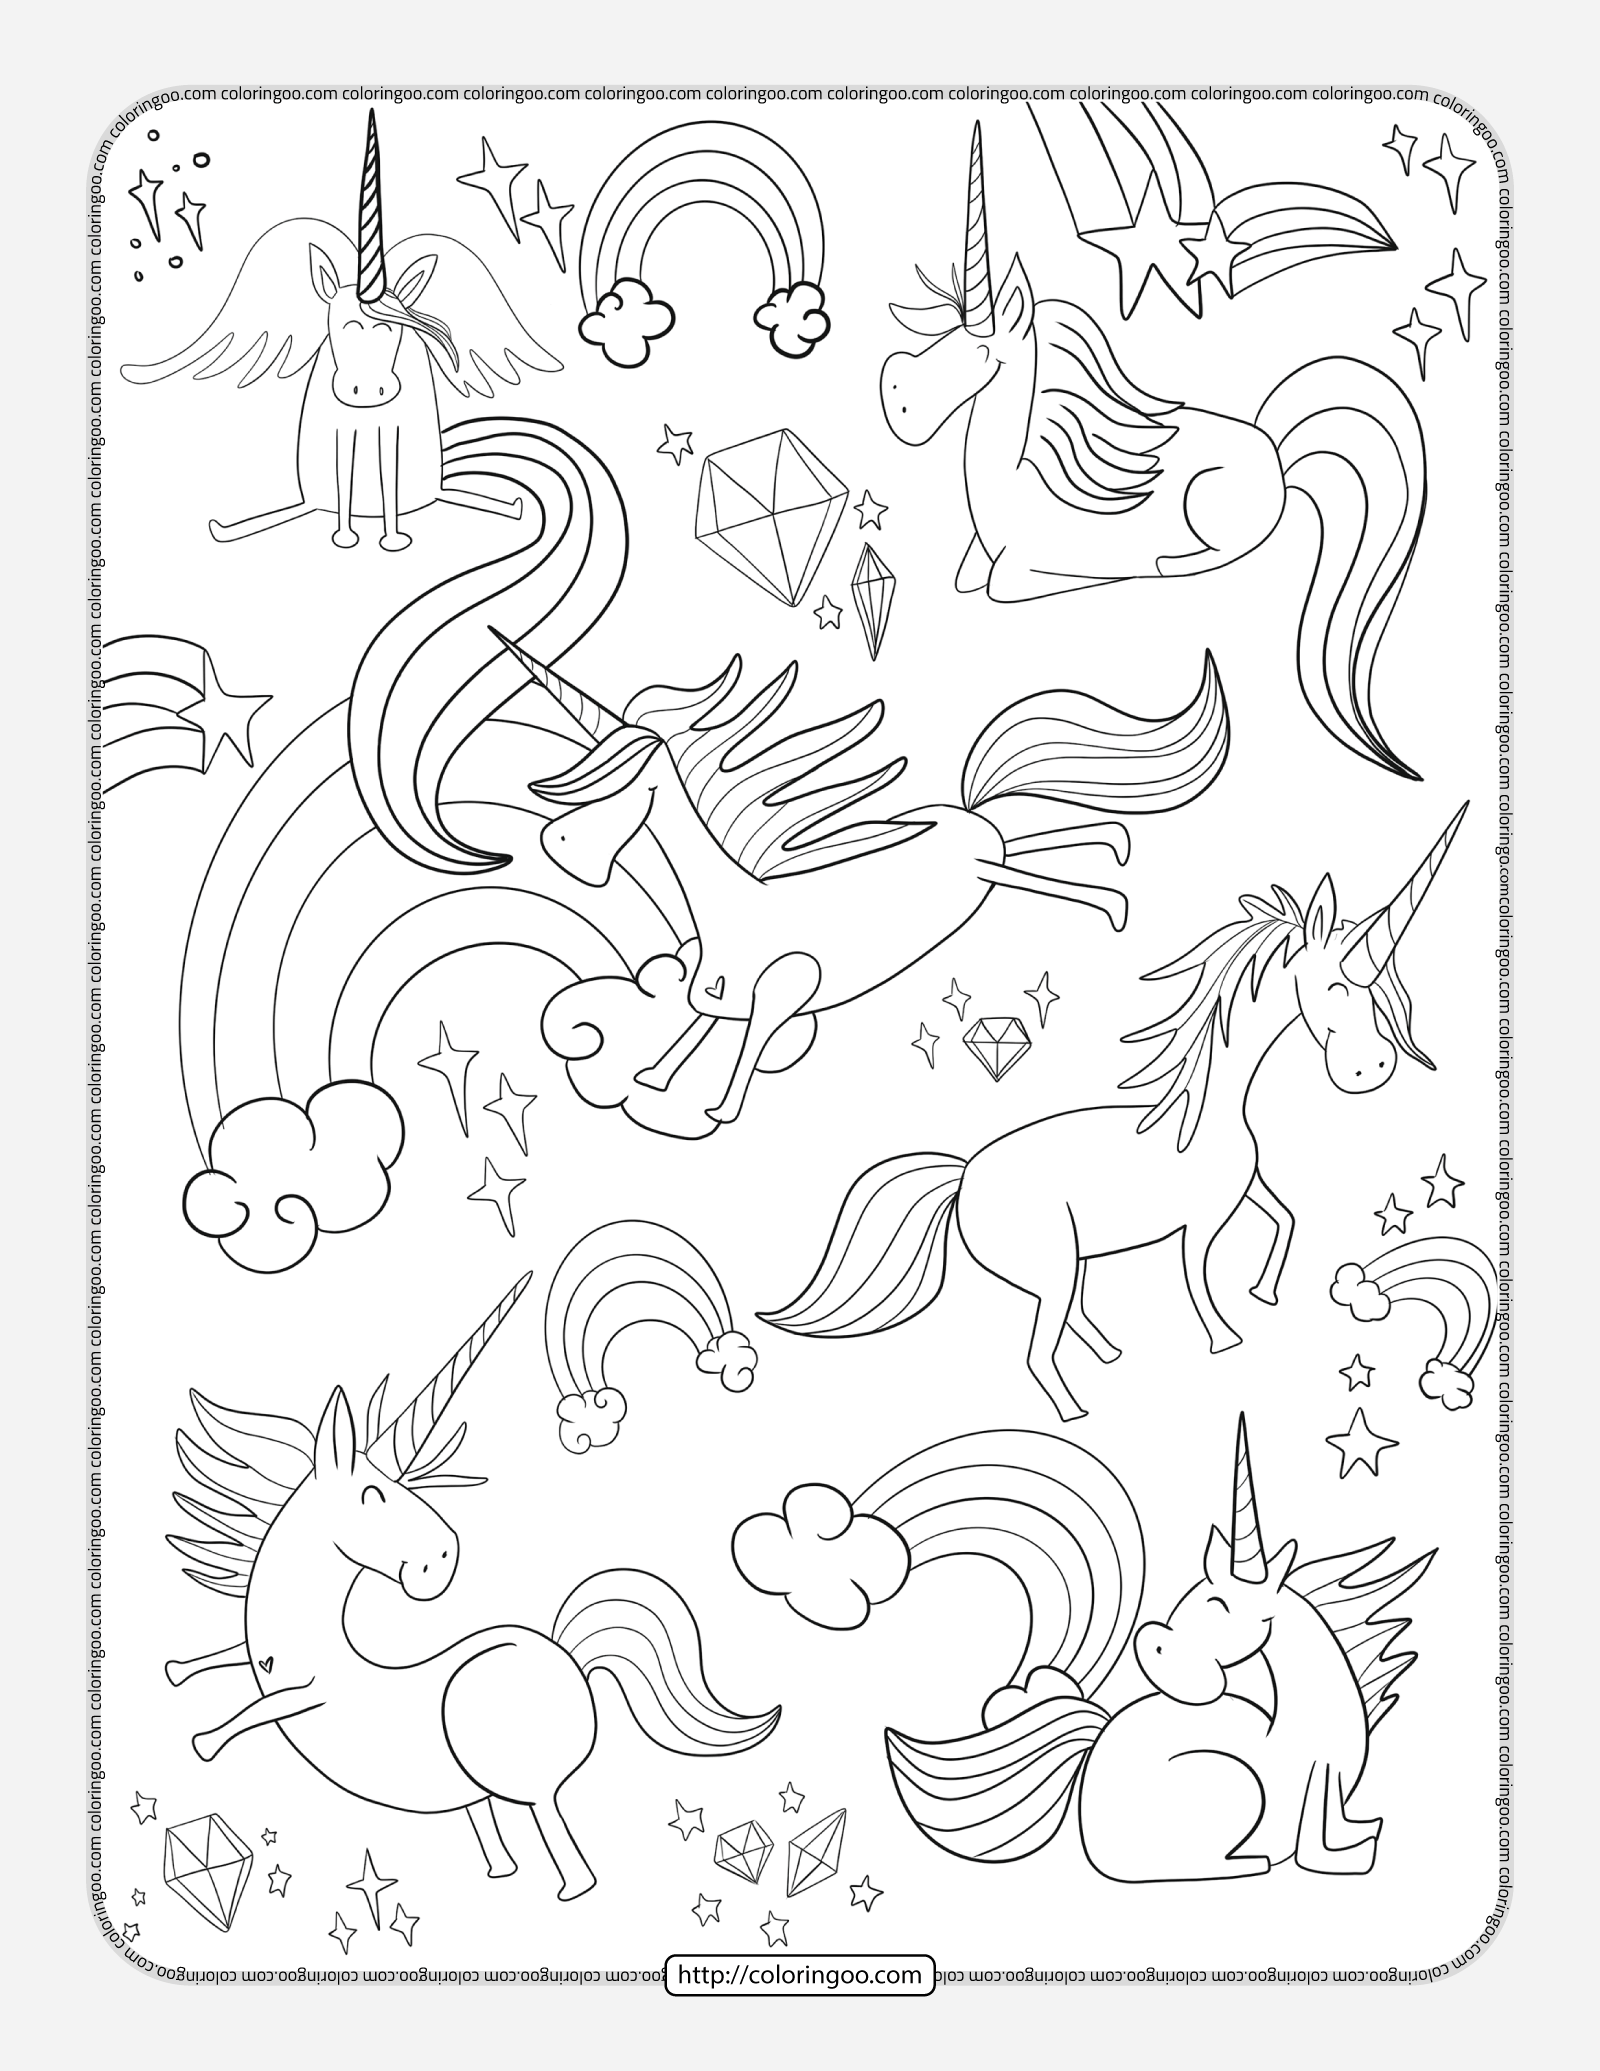 unicorns doodle pdf coloring page